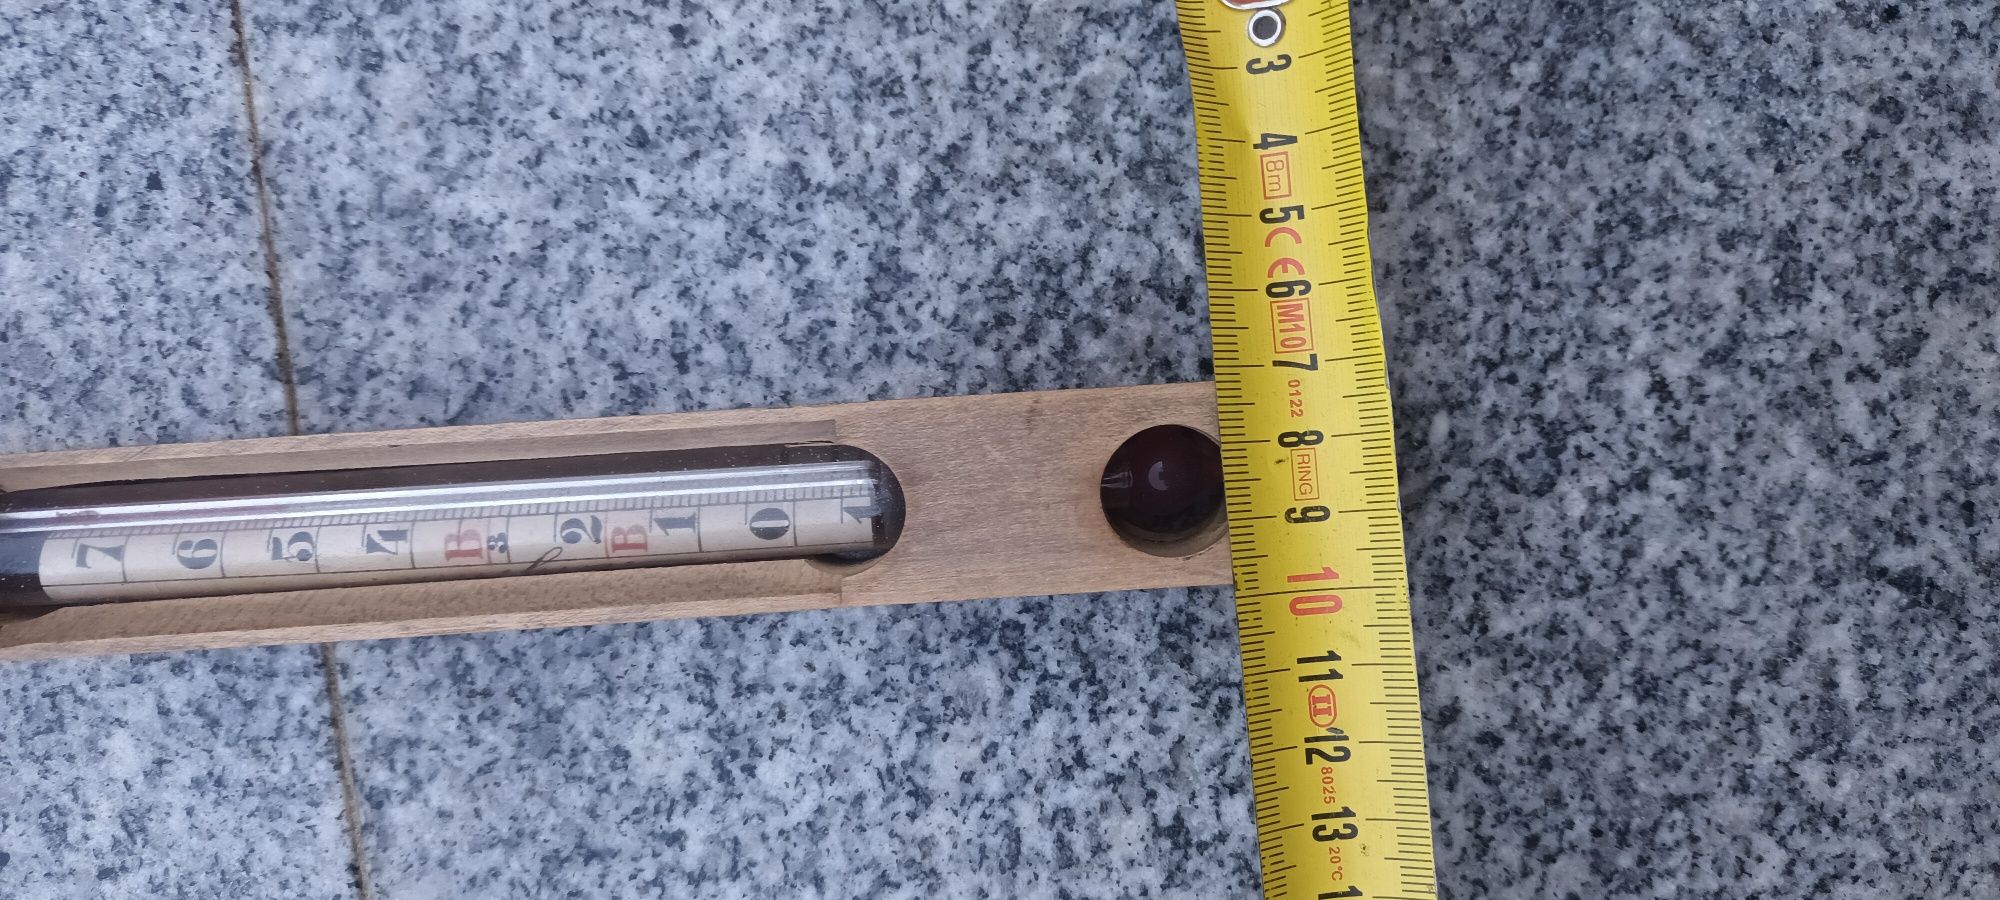 Termometru vechi in suport din lemn